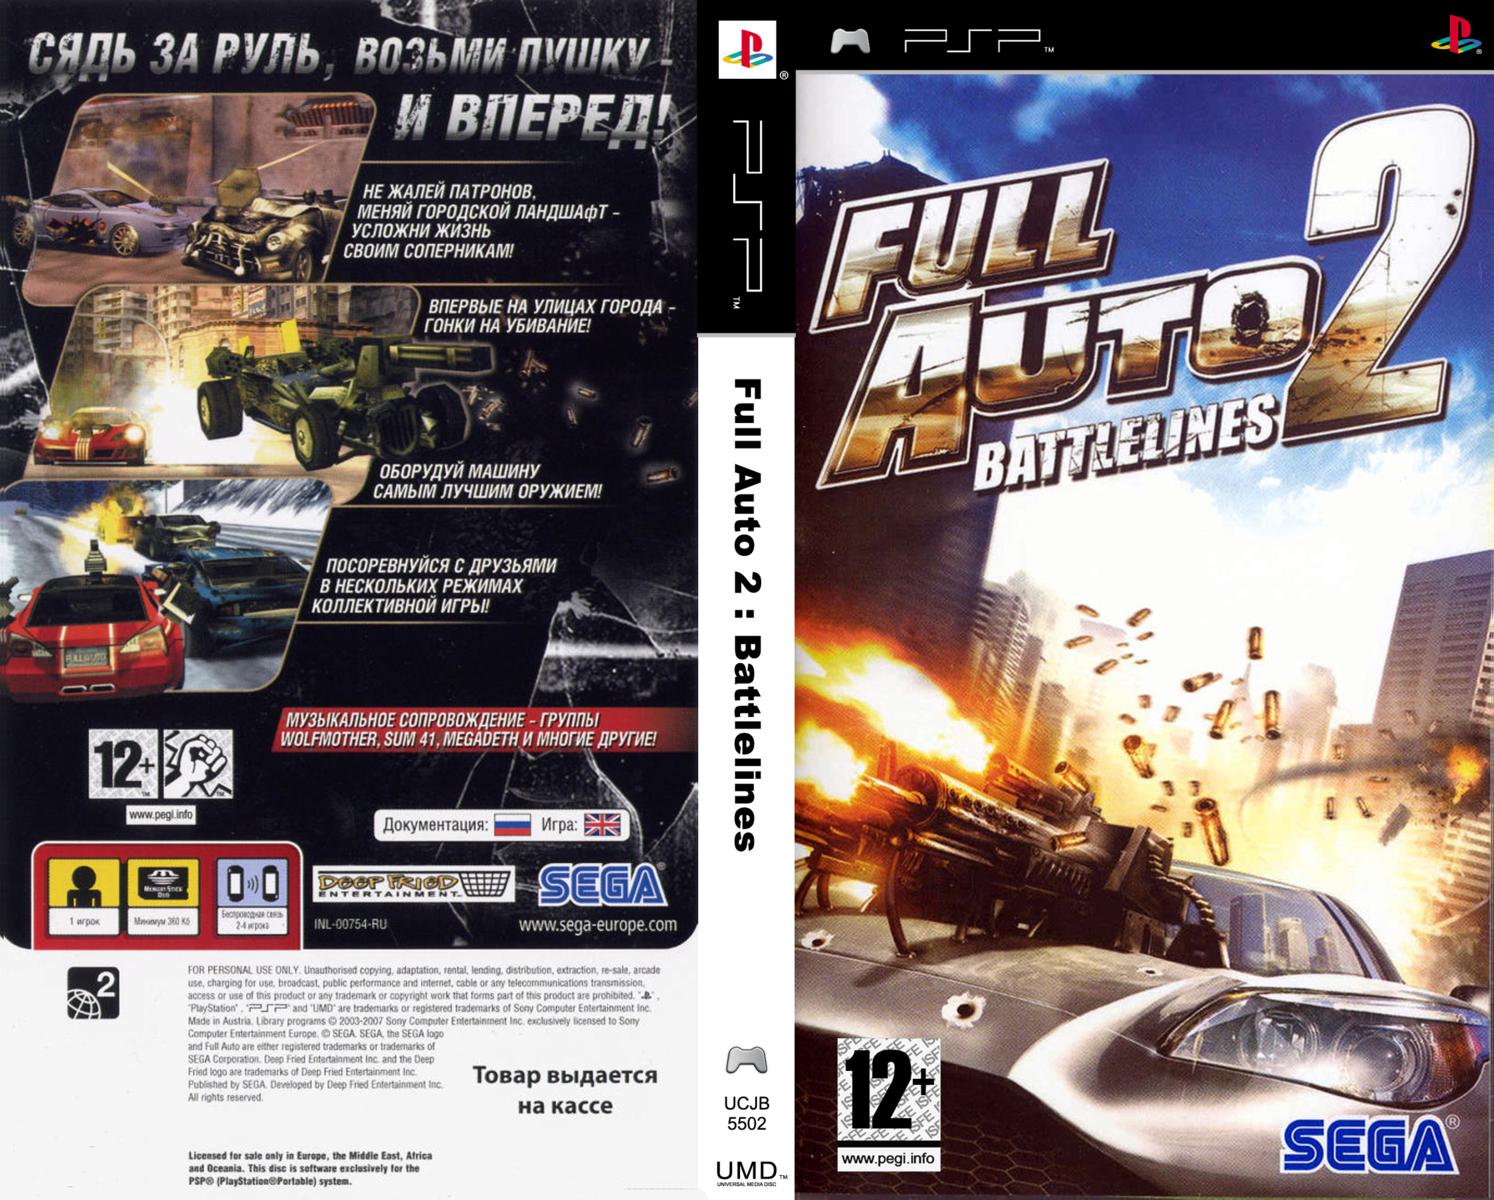 Игры на псп 3. Full auto 2 PSP. Full auto 2 Battlelines PSP. Full auto 2 Battlelines PSP обложка. ISO игра.